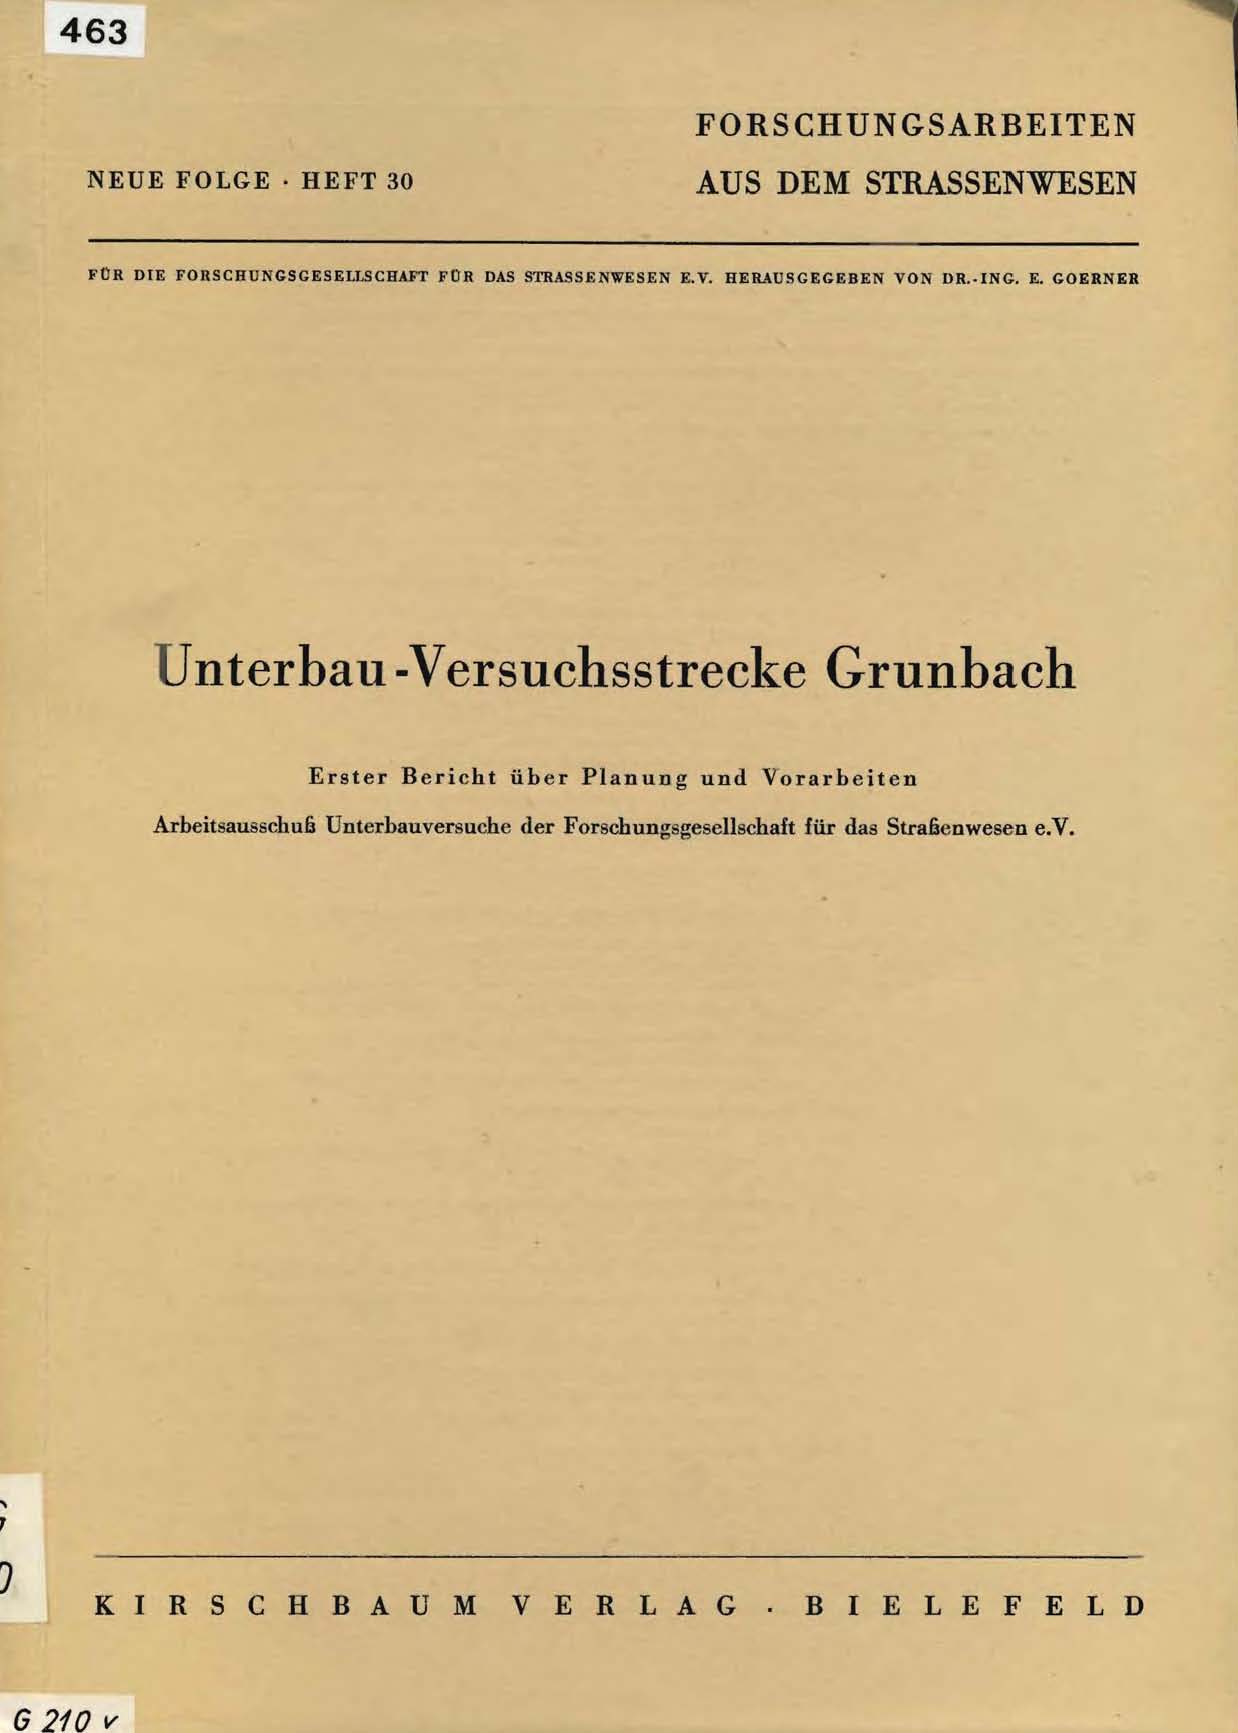 Unterbau-Versuchsstrecke Grunbach